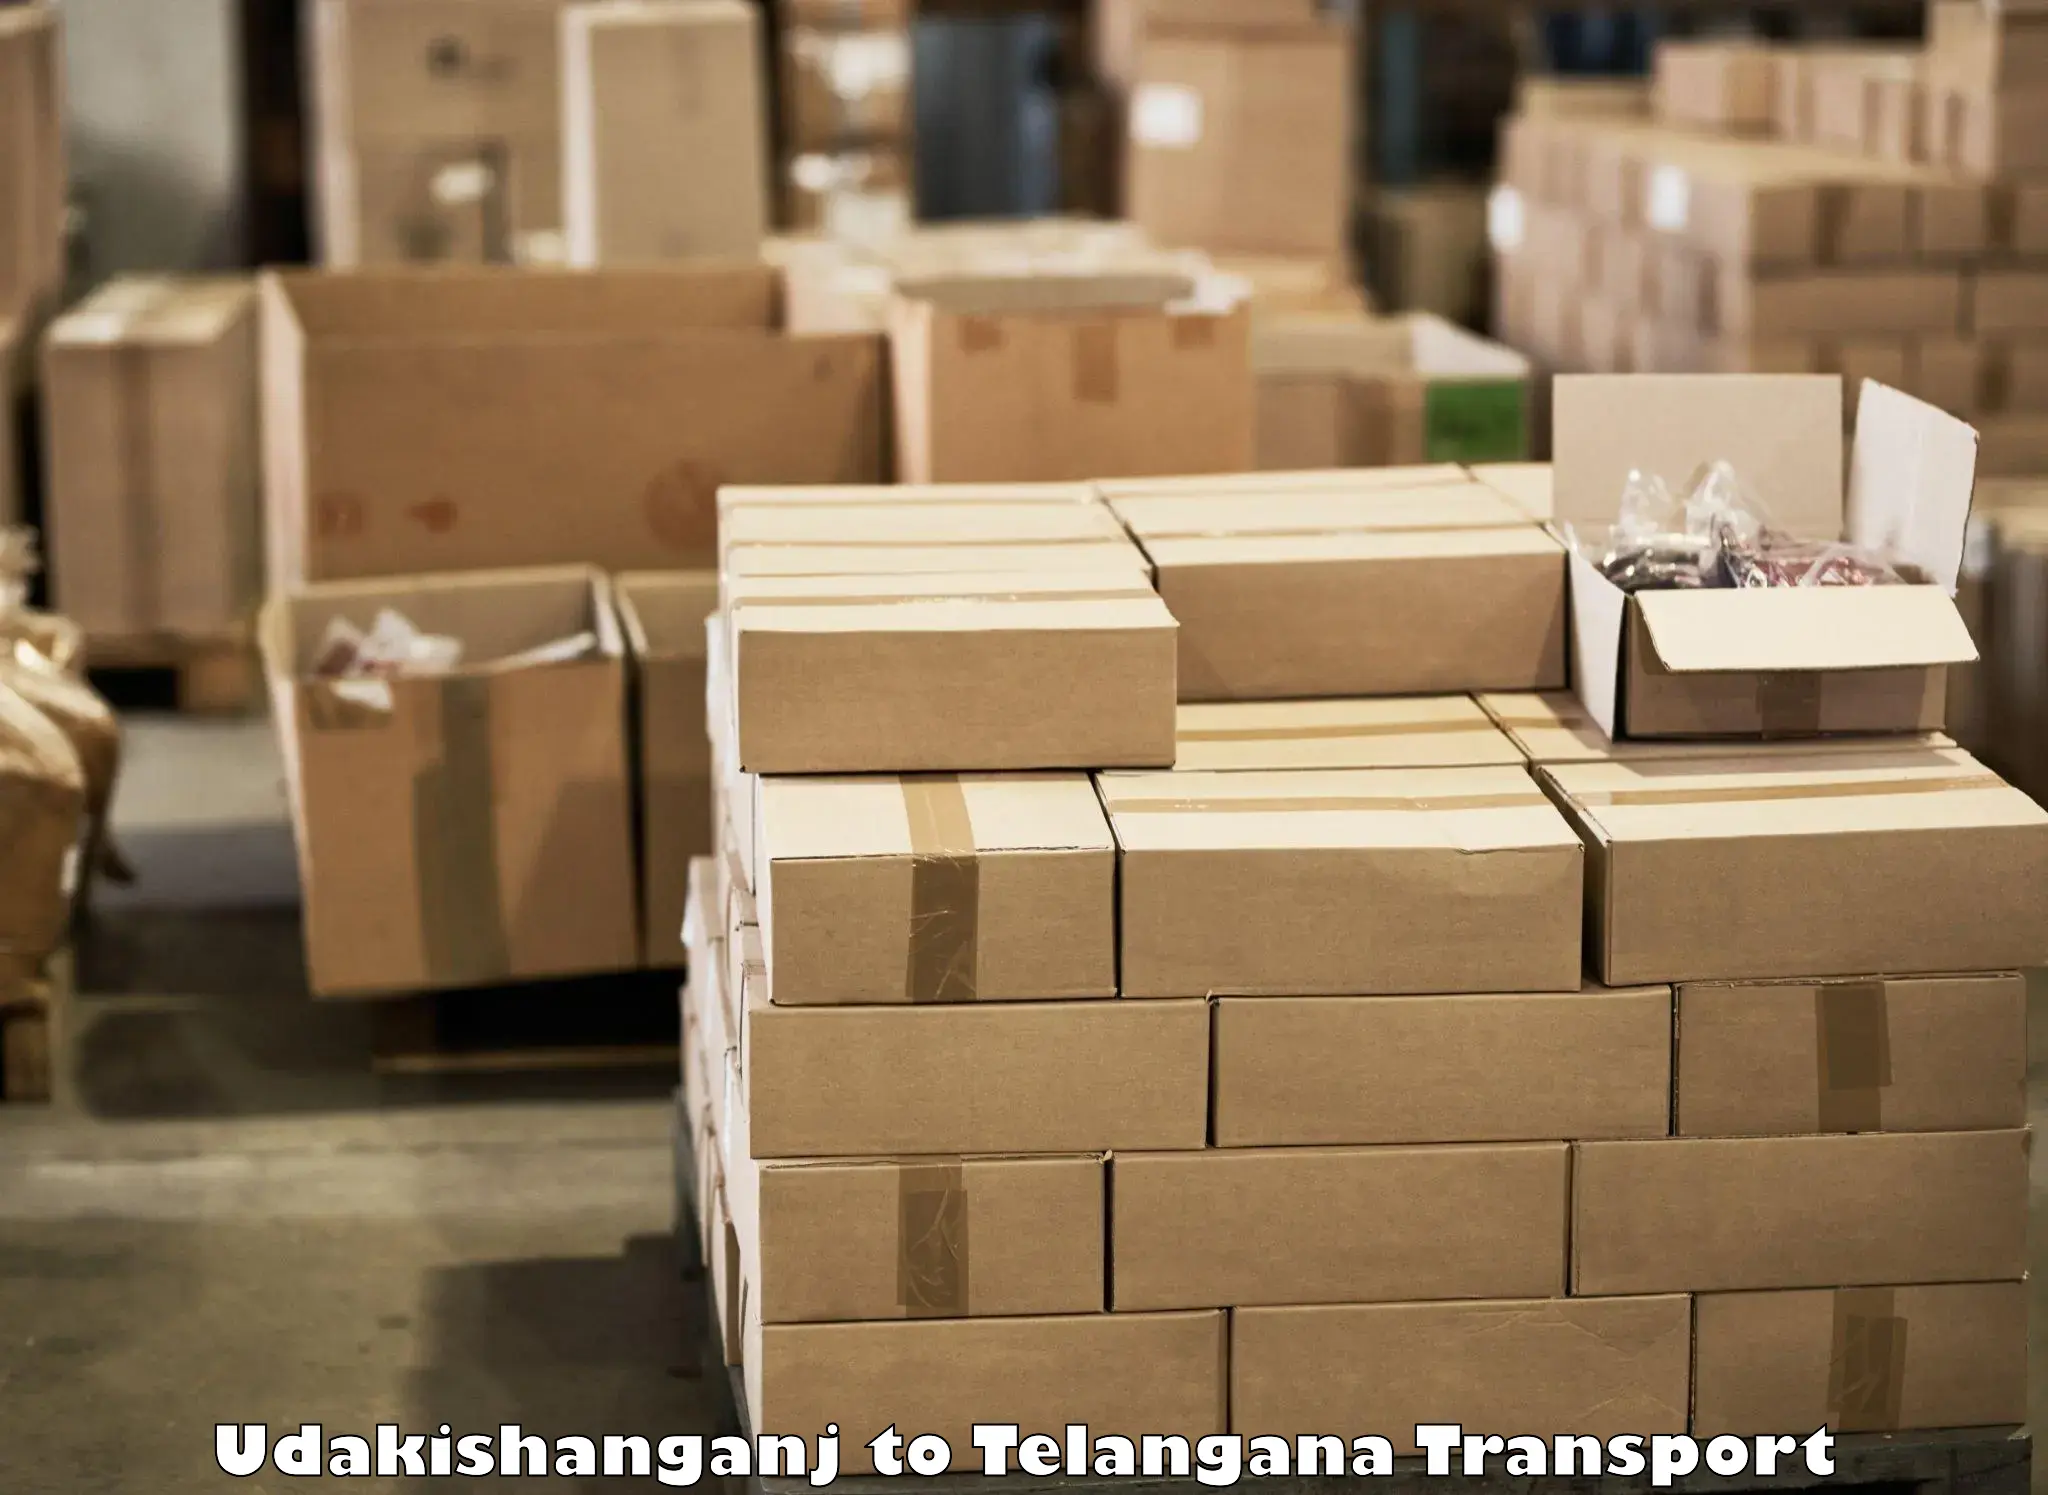 Commercial transport service Udakishanganj to Manthani